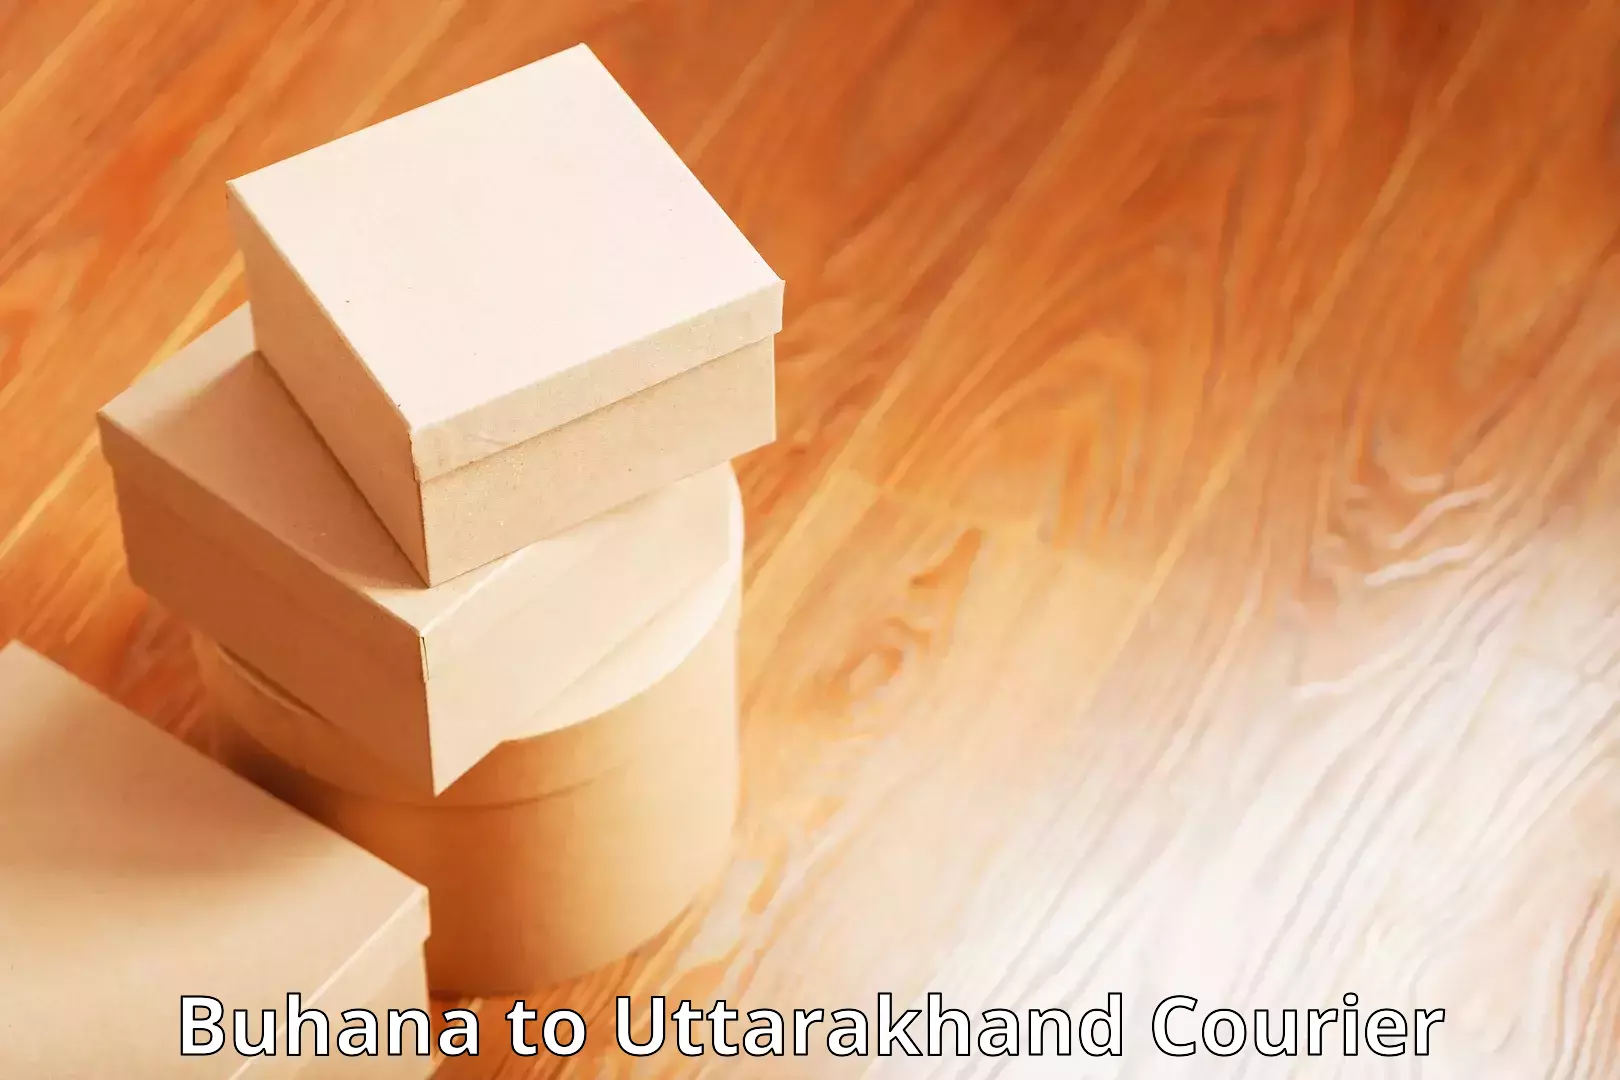 Efficient logistics management Buhana to Uttarakhand